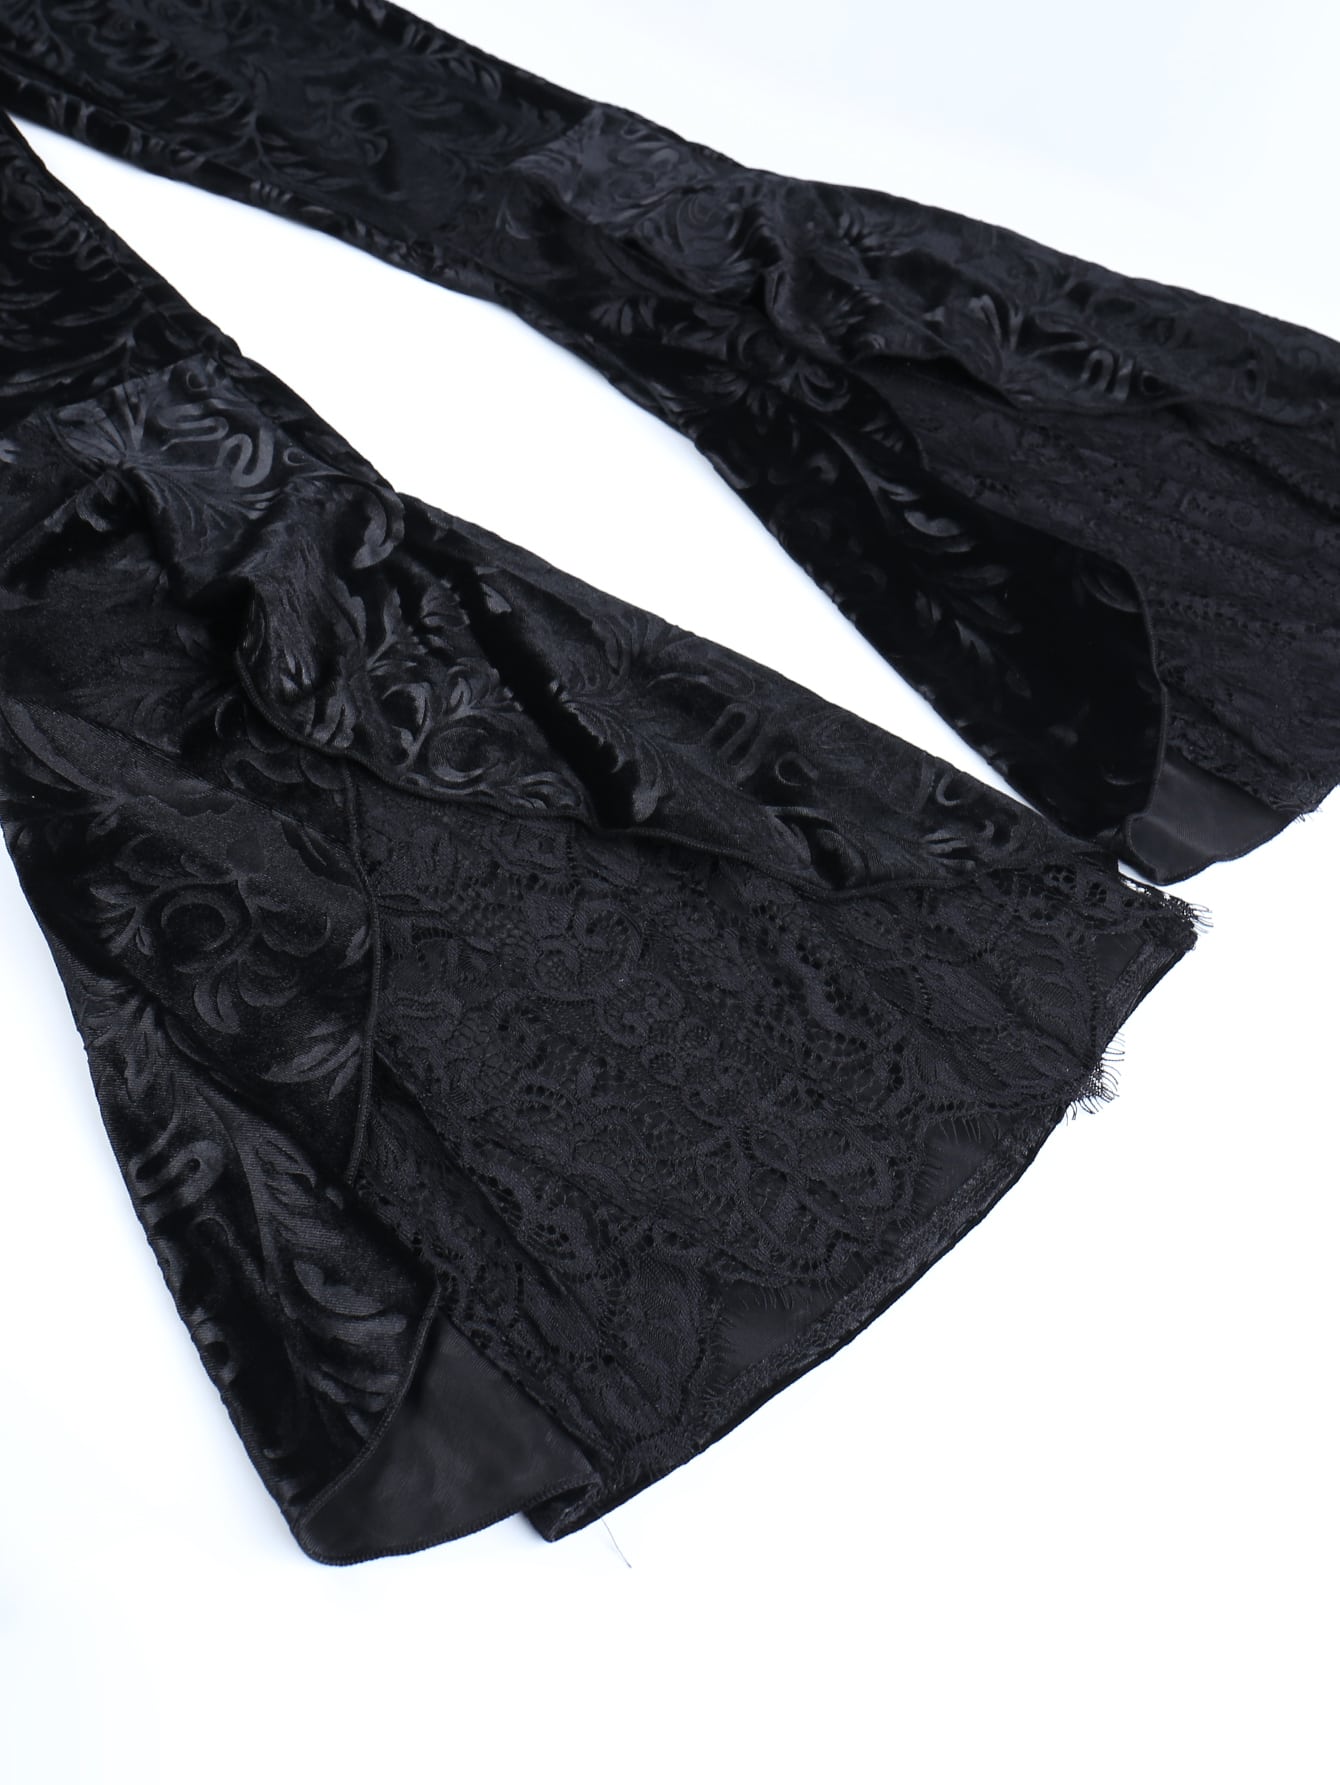 Pantalones góticos de terciopelo con dobladillo con volantes y encaje en contraste